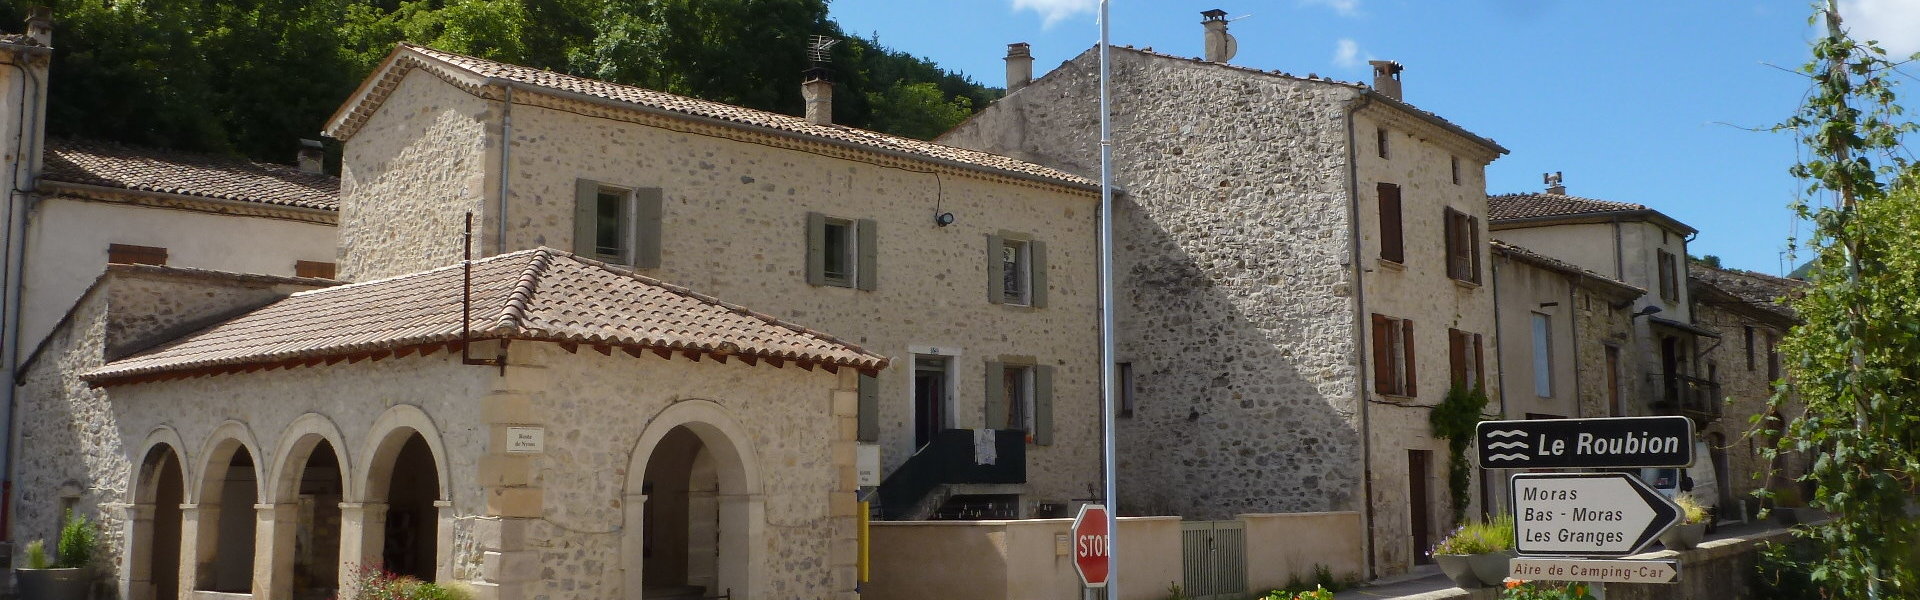 Accueil - Commune de Bouvières - Département de la Drôme